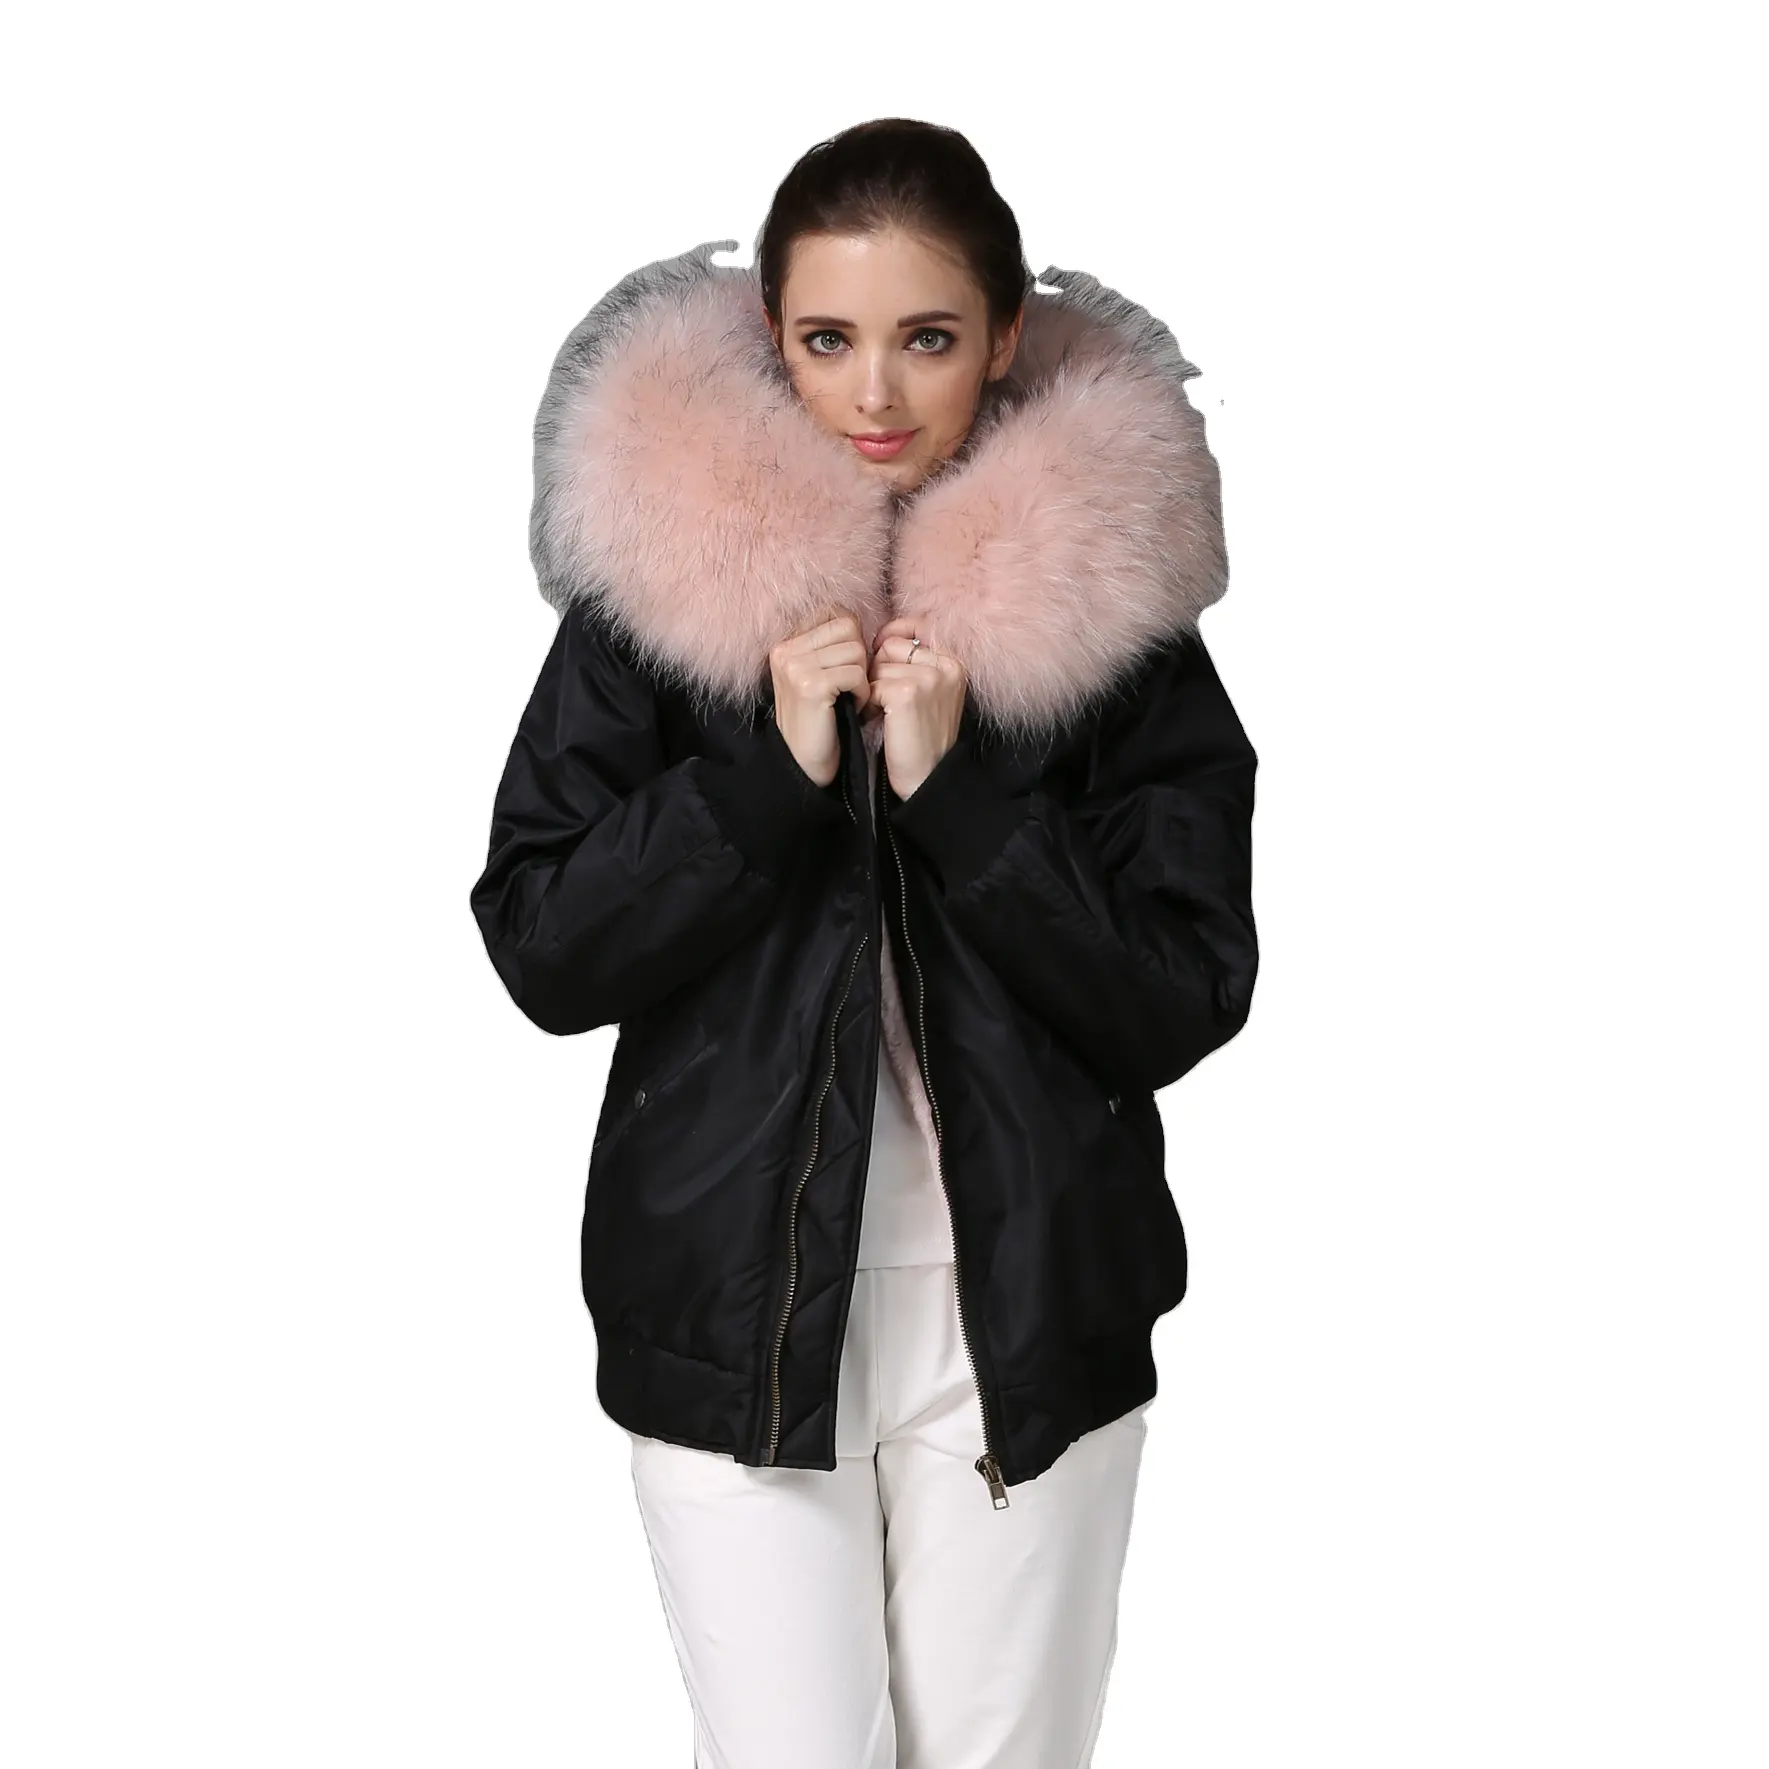 Chaqueta con capucha de piel de mapache para invierno, chaqueta de nailon resistente al agua de Material clásico negro, color rosa claro, abrigo de talla grande